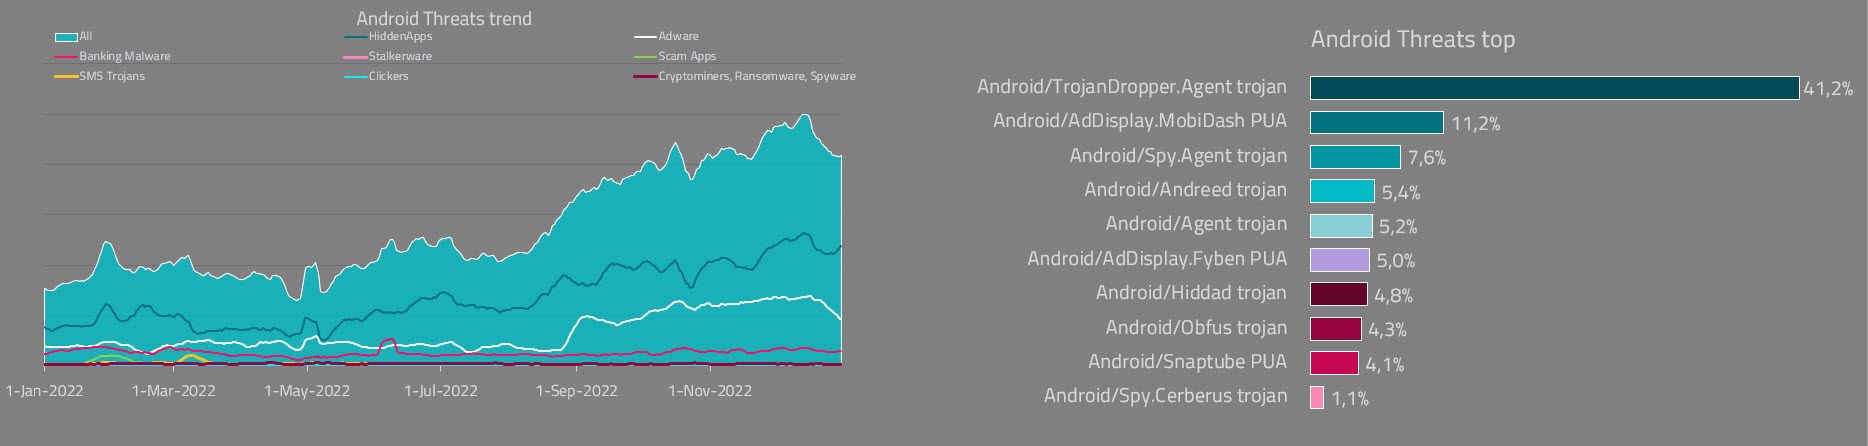 Deteccion de amenazas para Android en LATAM durante 2022